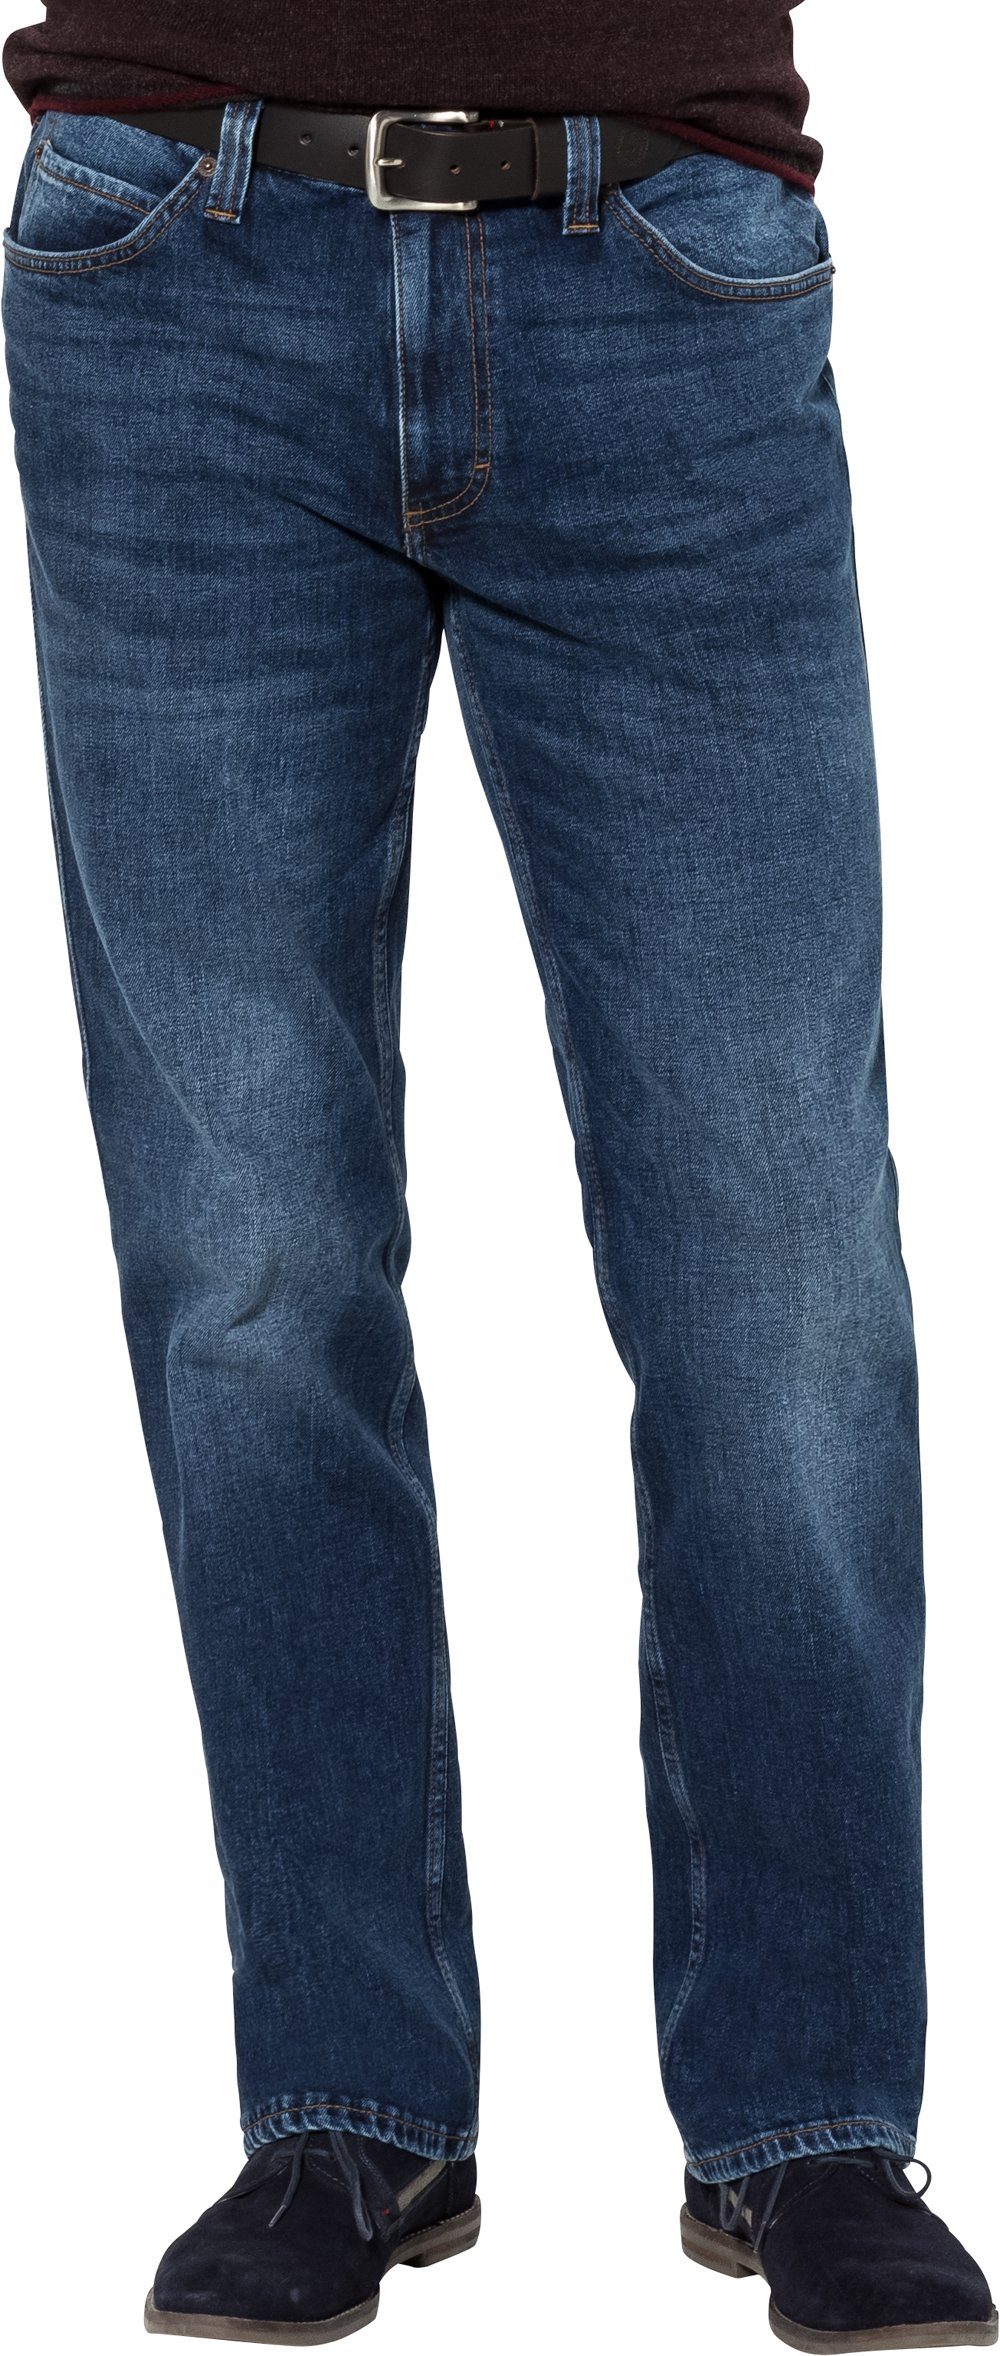 Stretch geradem Bund 5-Pocket-Style, MUSTANG im mit blau Beinverlauf Stretch-Jeans und